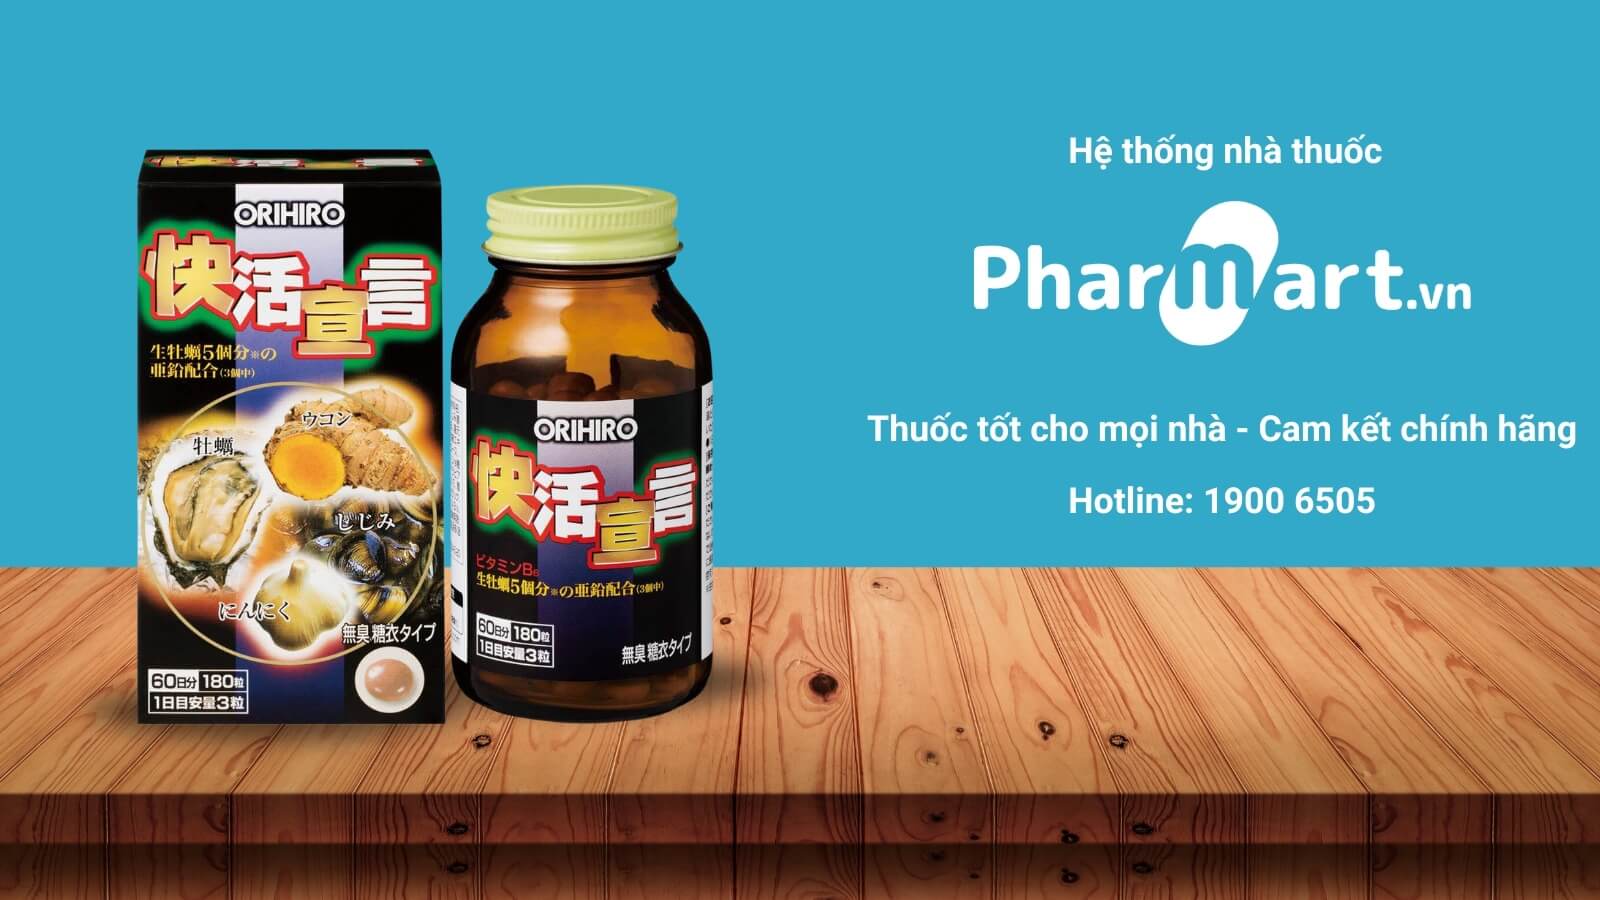 Pharmart.vn phân phối chính hãng Hàu Nghệ Tỏi Orihiro